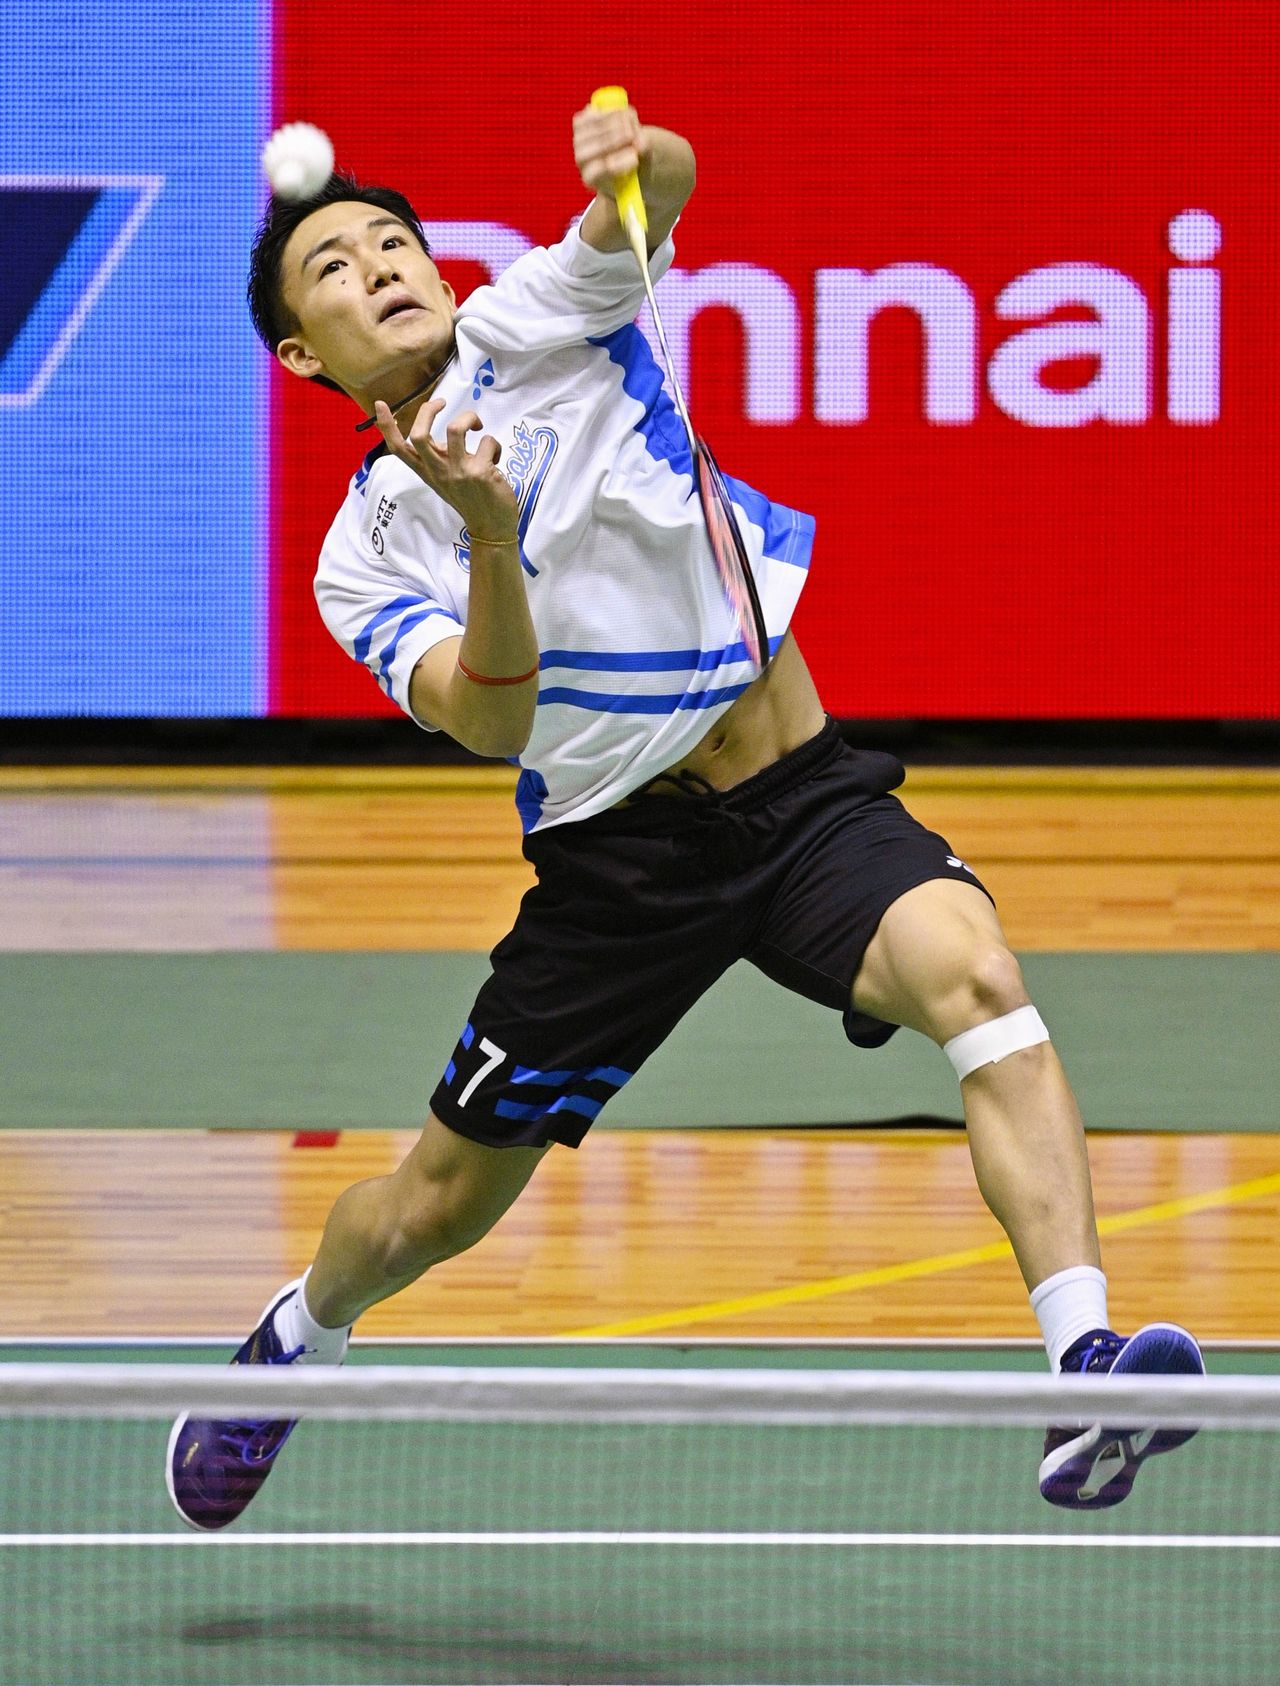 En el Campeonato Nacional de Japón celebrado en diciembre de 2020, Momota consiguió su cuarta victoria en individual masculino, tres de ellas en los tres últimos años. Fue un broche de oro a su regreso a la competición tras 11 meses de ausencia. (Jiji Press)